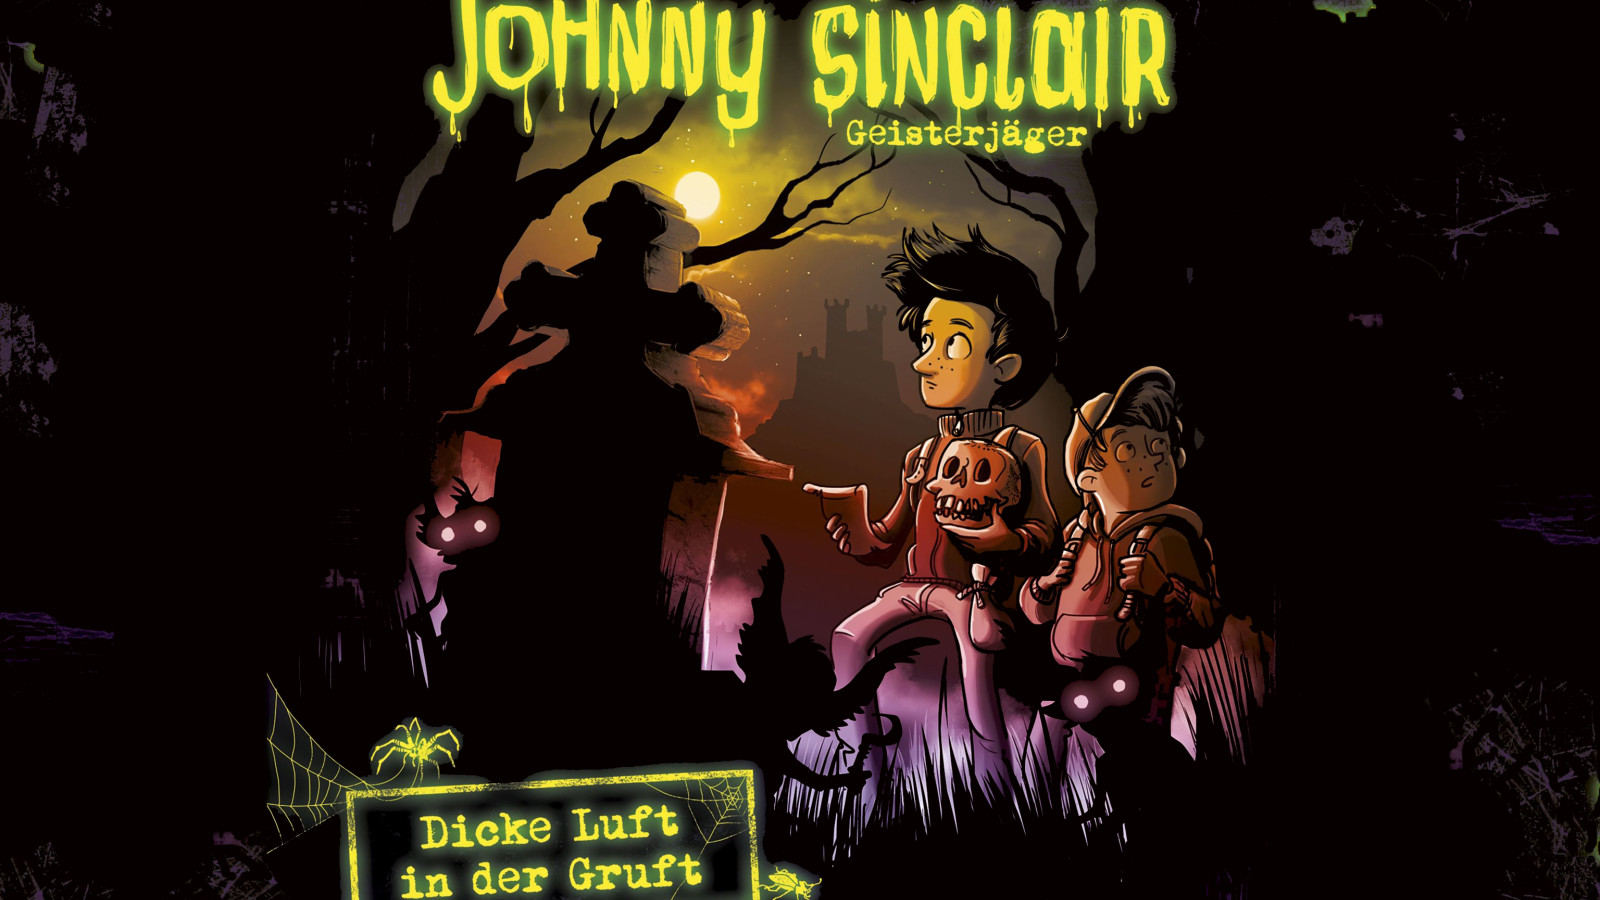 Das neueste Johnny Sinclair Abenteuer "Dicke Luft in der Gruft" geht in die finale Runde